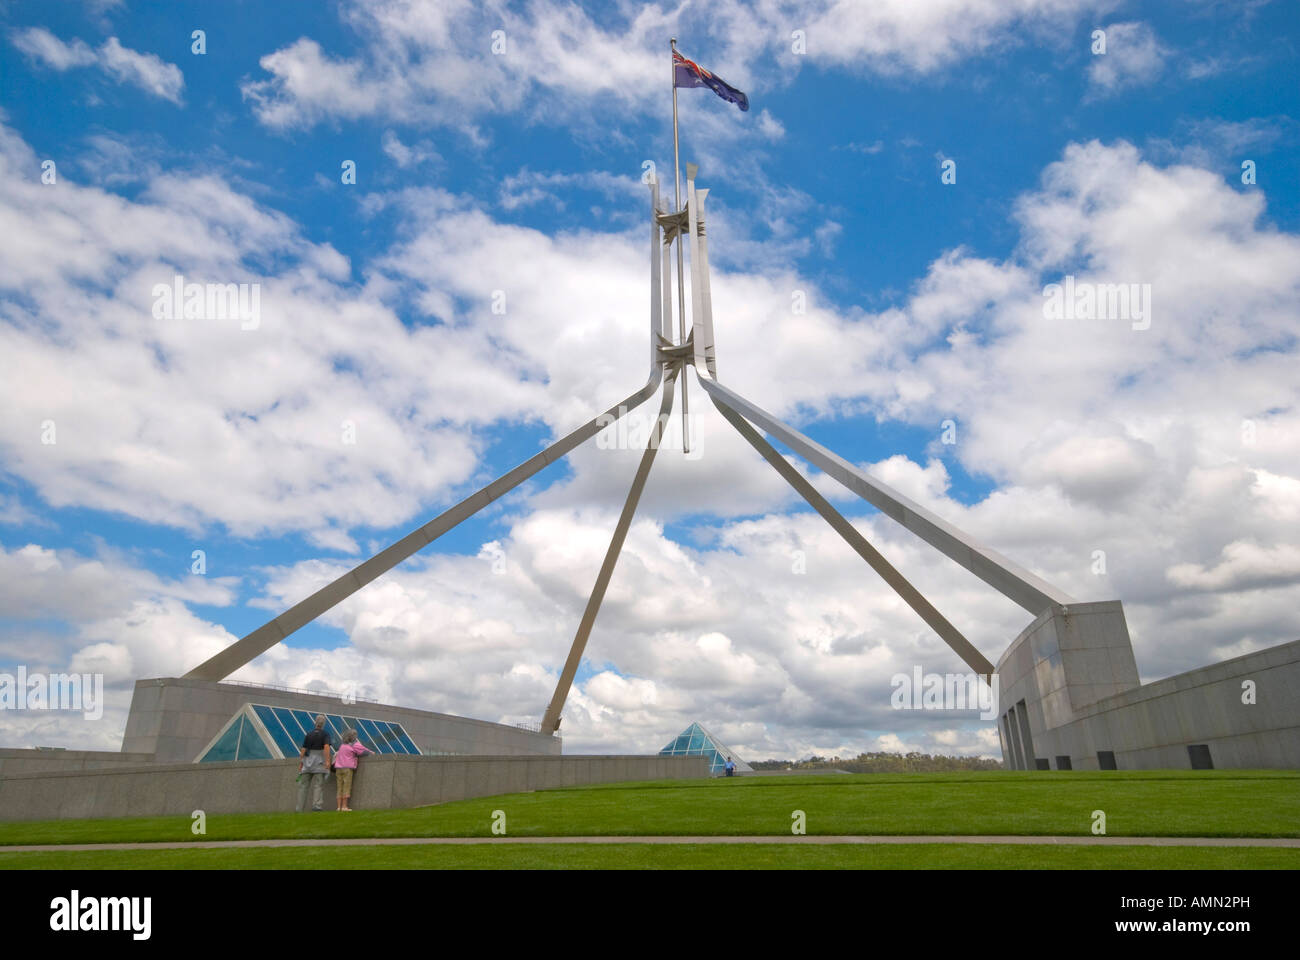 Das australische Parlament in Canberra ACT Australien Stockfoto